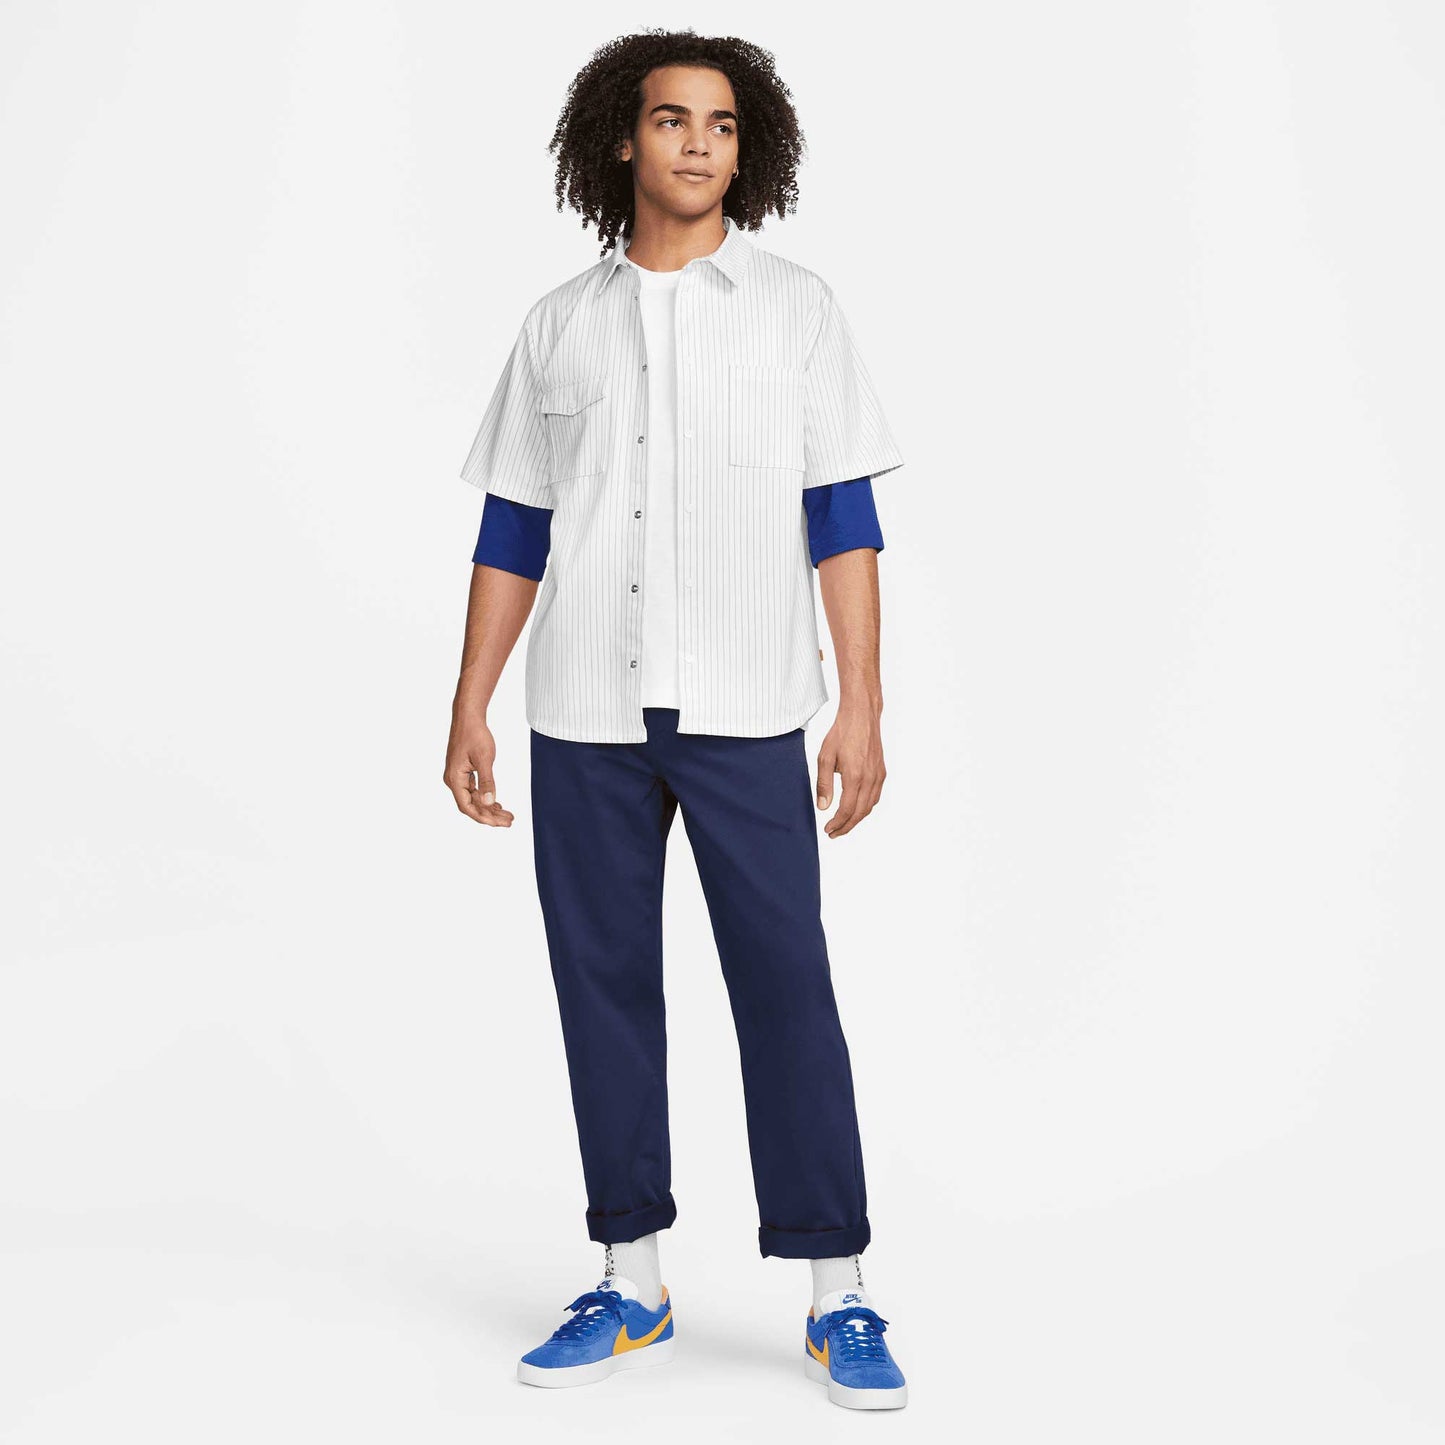 Nike SB Raglan Skate T-Shirt, white/deep royal blue - Tiki Room Skateboards - 5